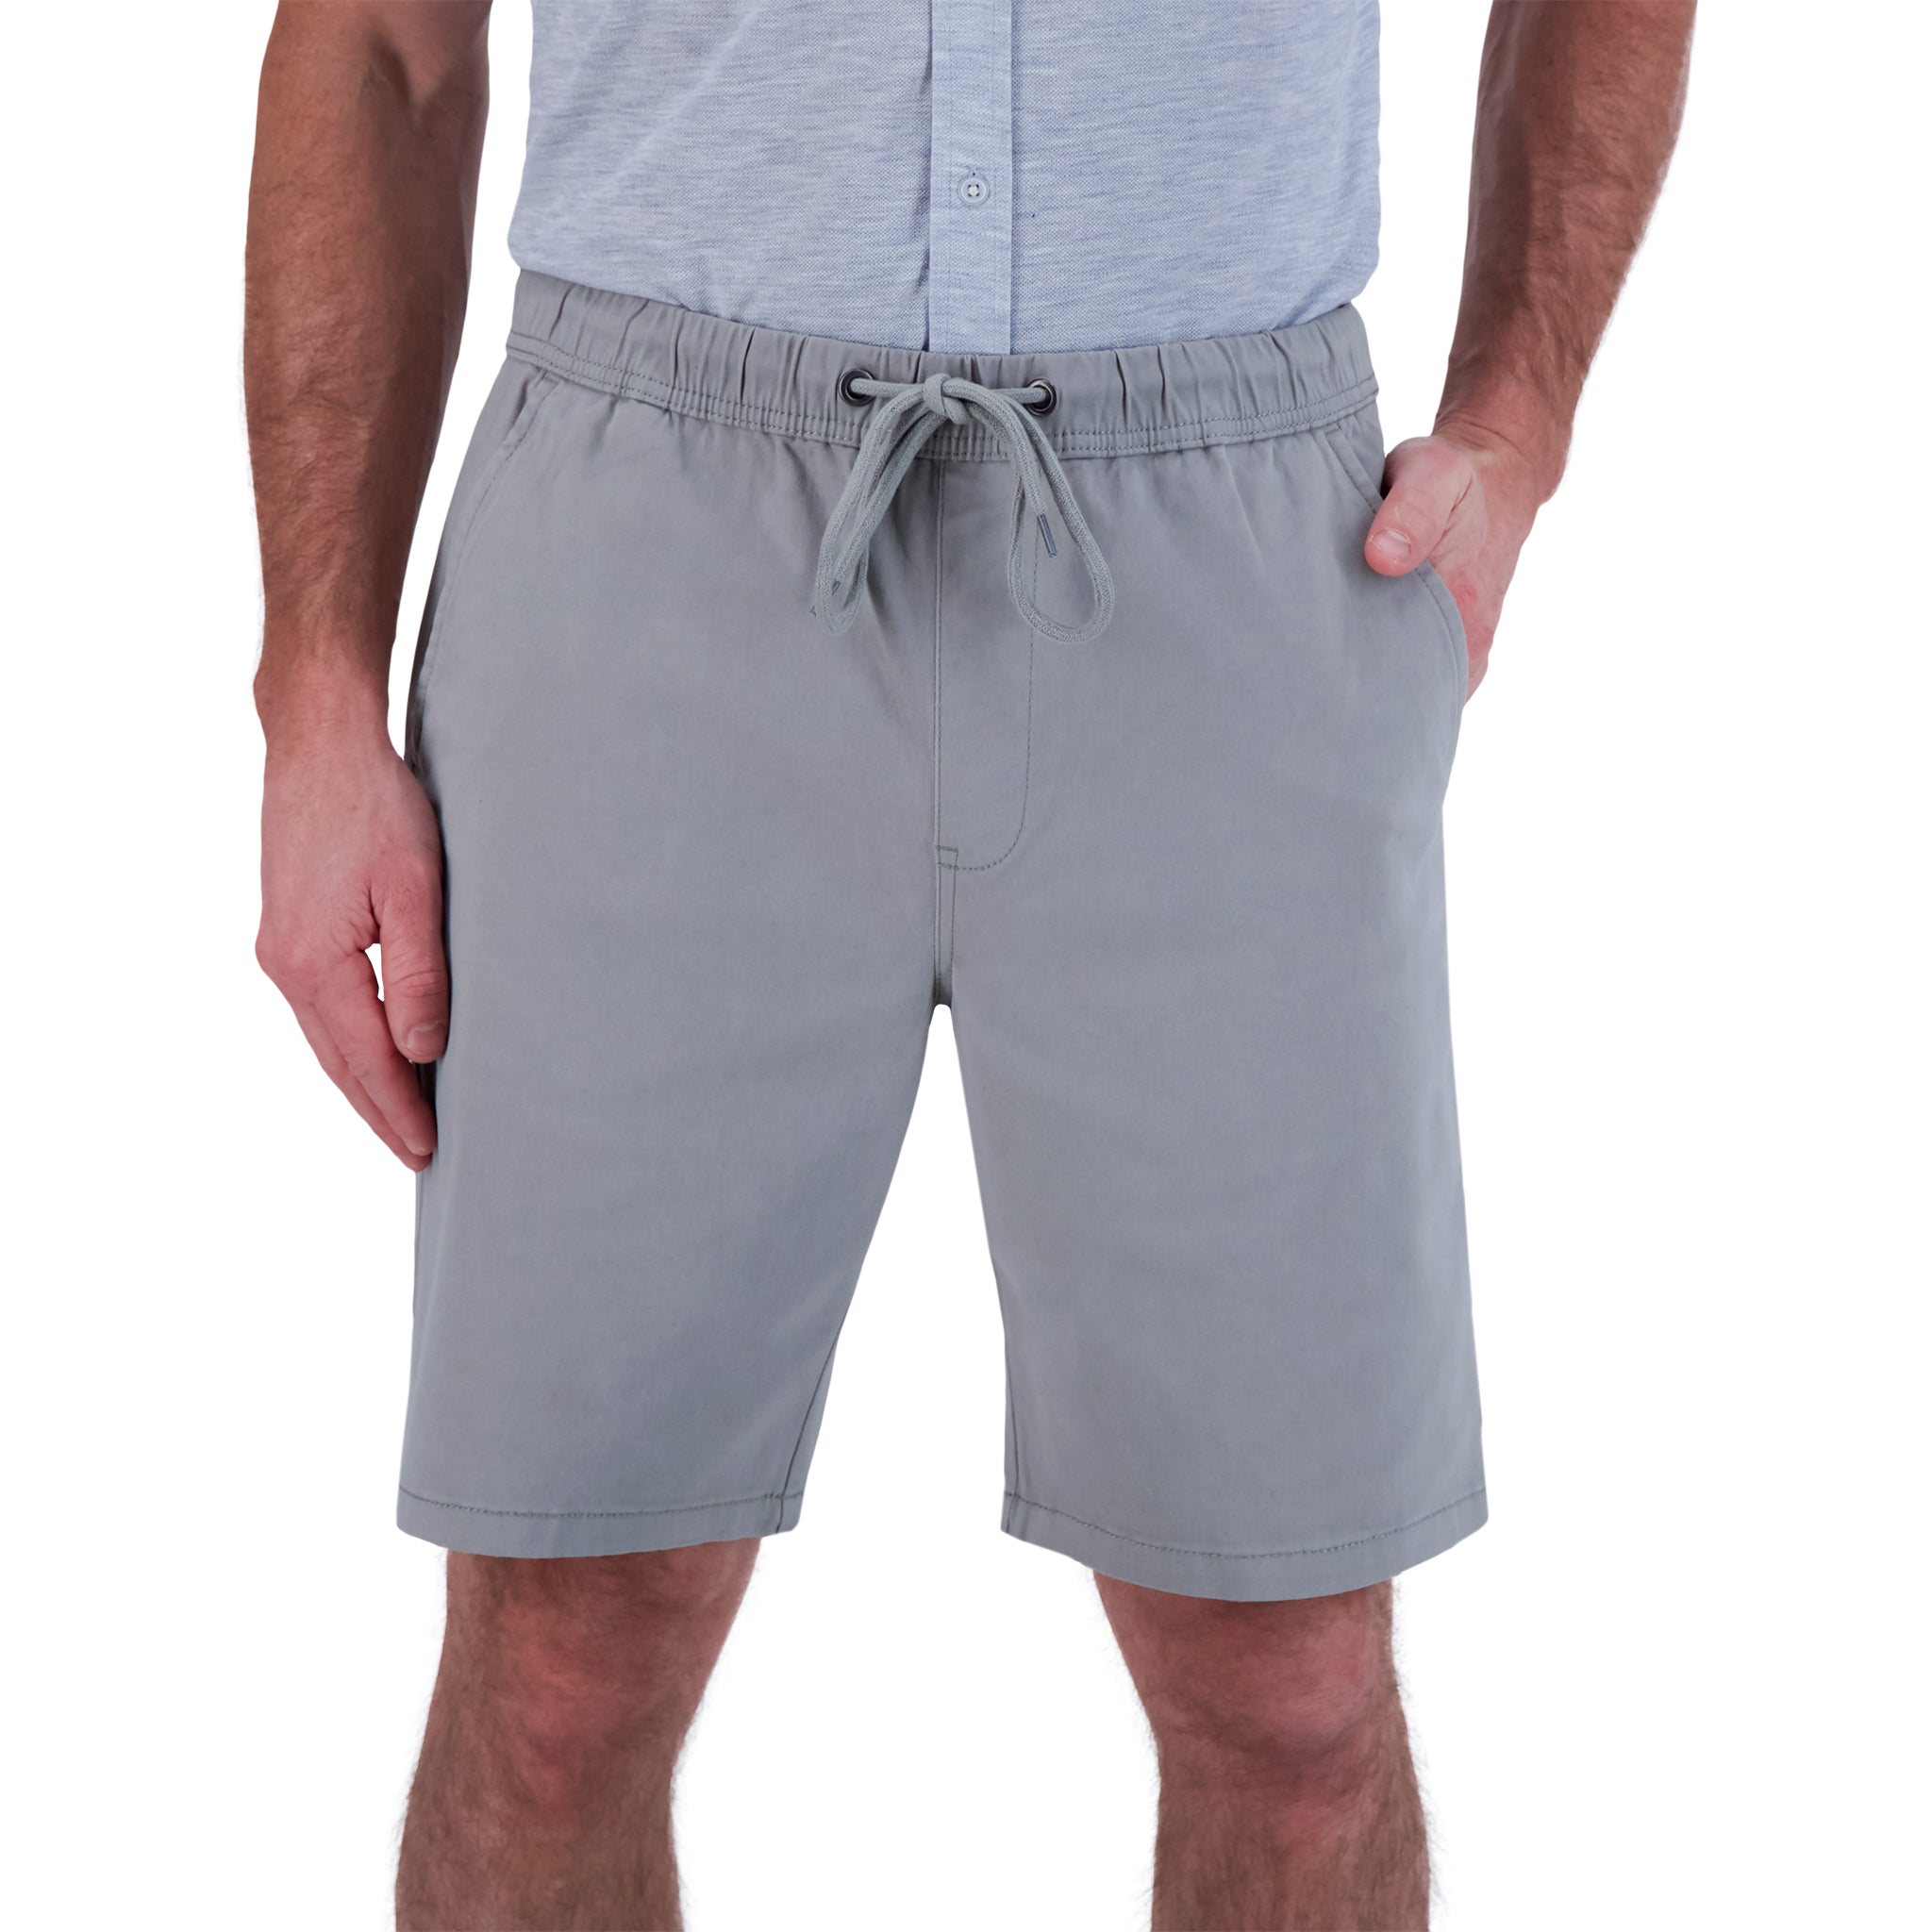 Waverly Grey, Shorts, Waverly Grey Woven Dressy Skort Size 4